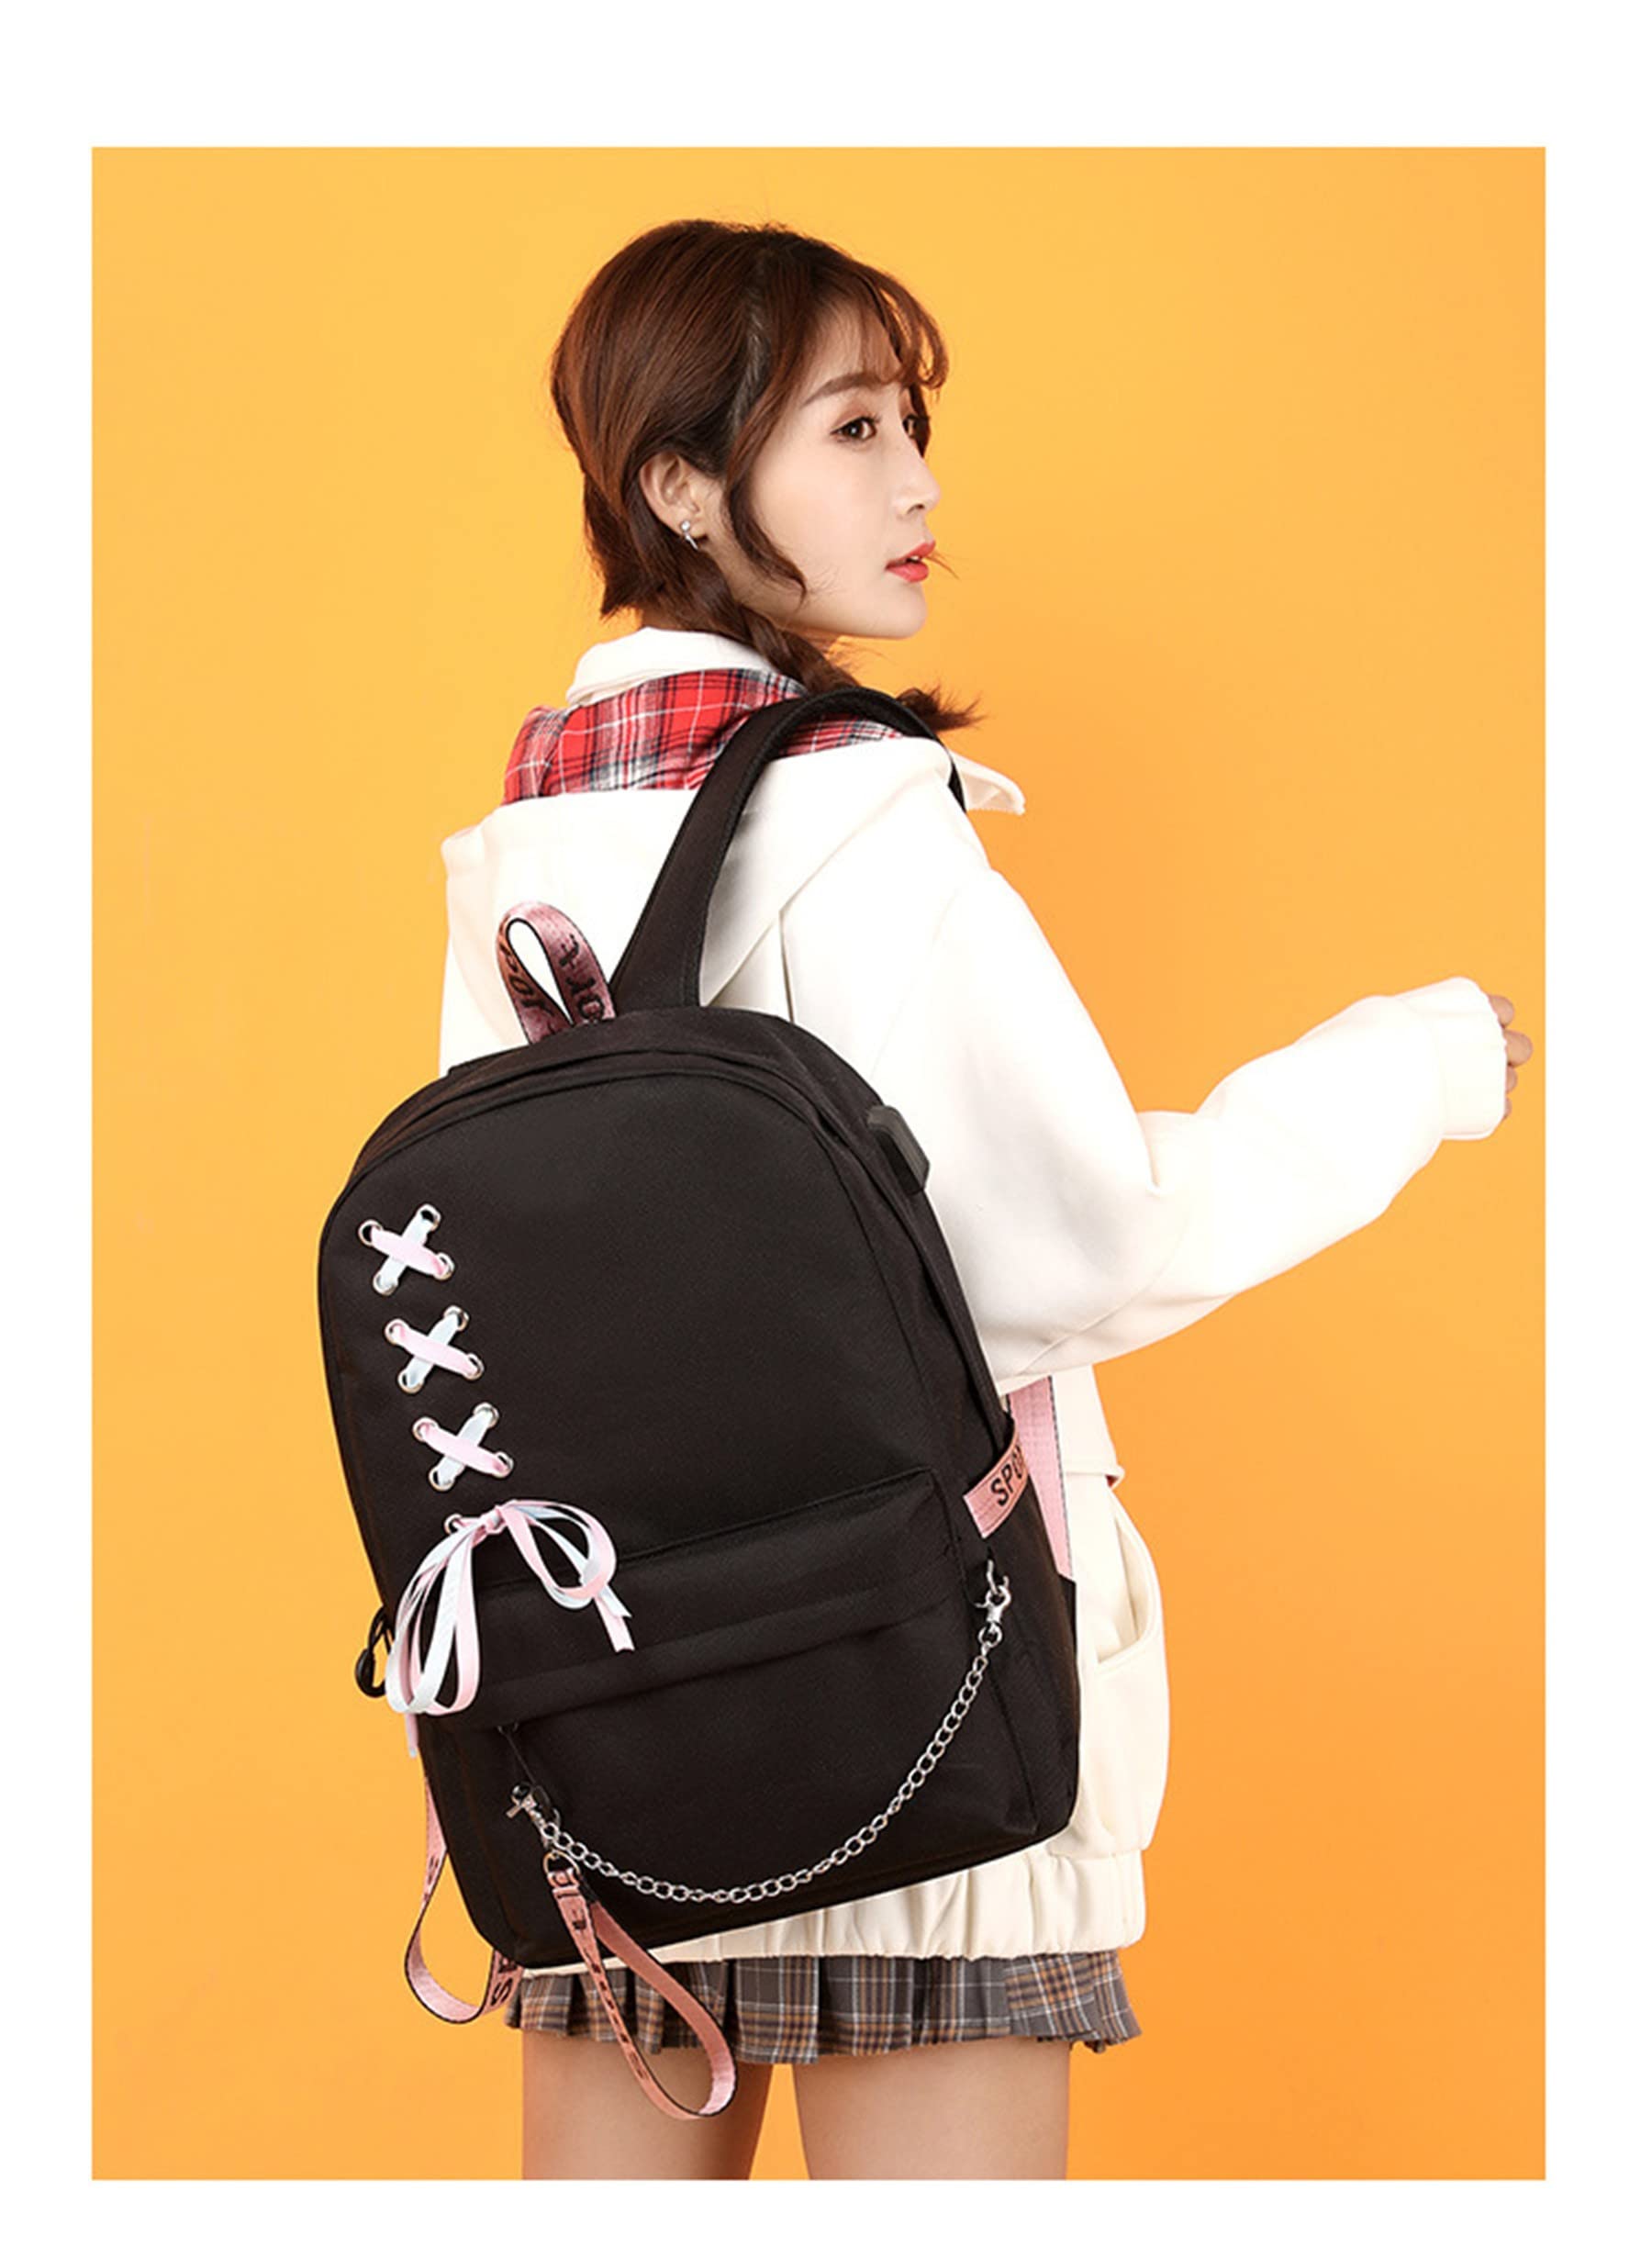 ISaikoy Anime The Promised Neverland Backpack Shoulder Bag Bookbag Student School Bag Daypack Satchel 14